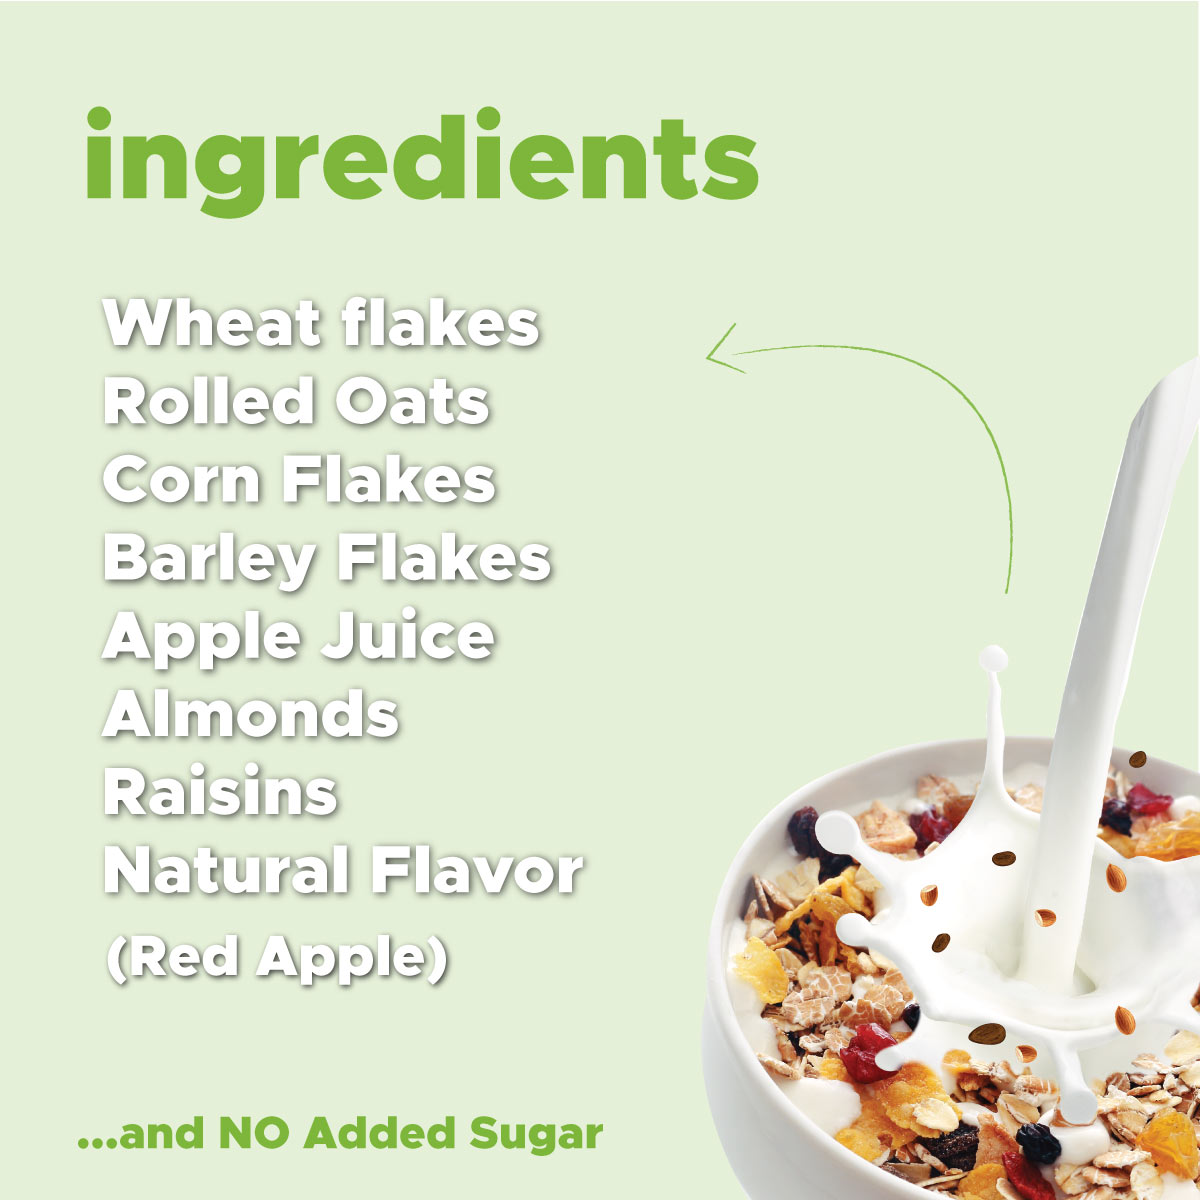 Image of ingredients of Diabetic friendly muesli calvays zero sugar muesli 